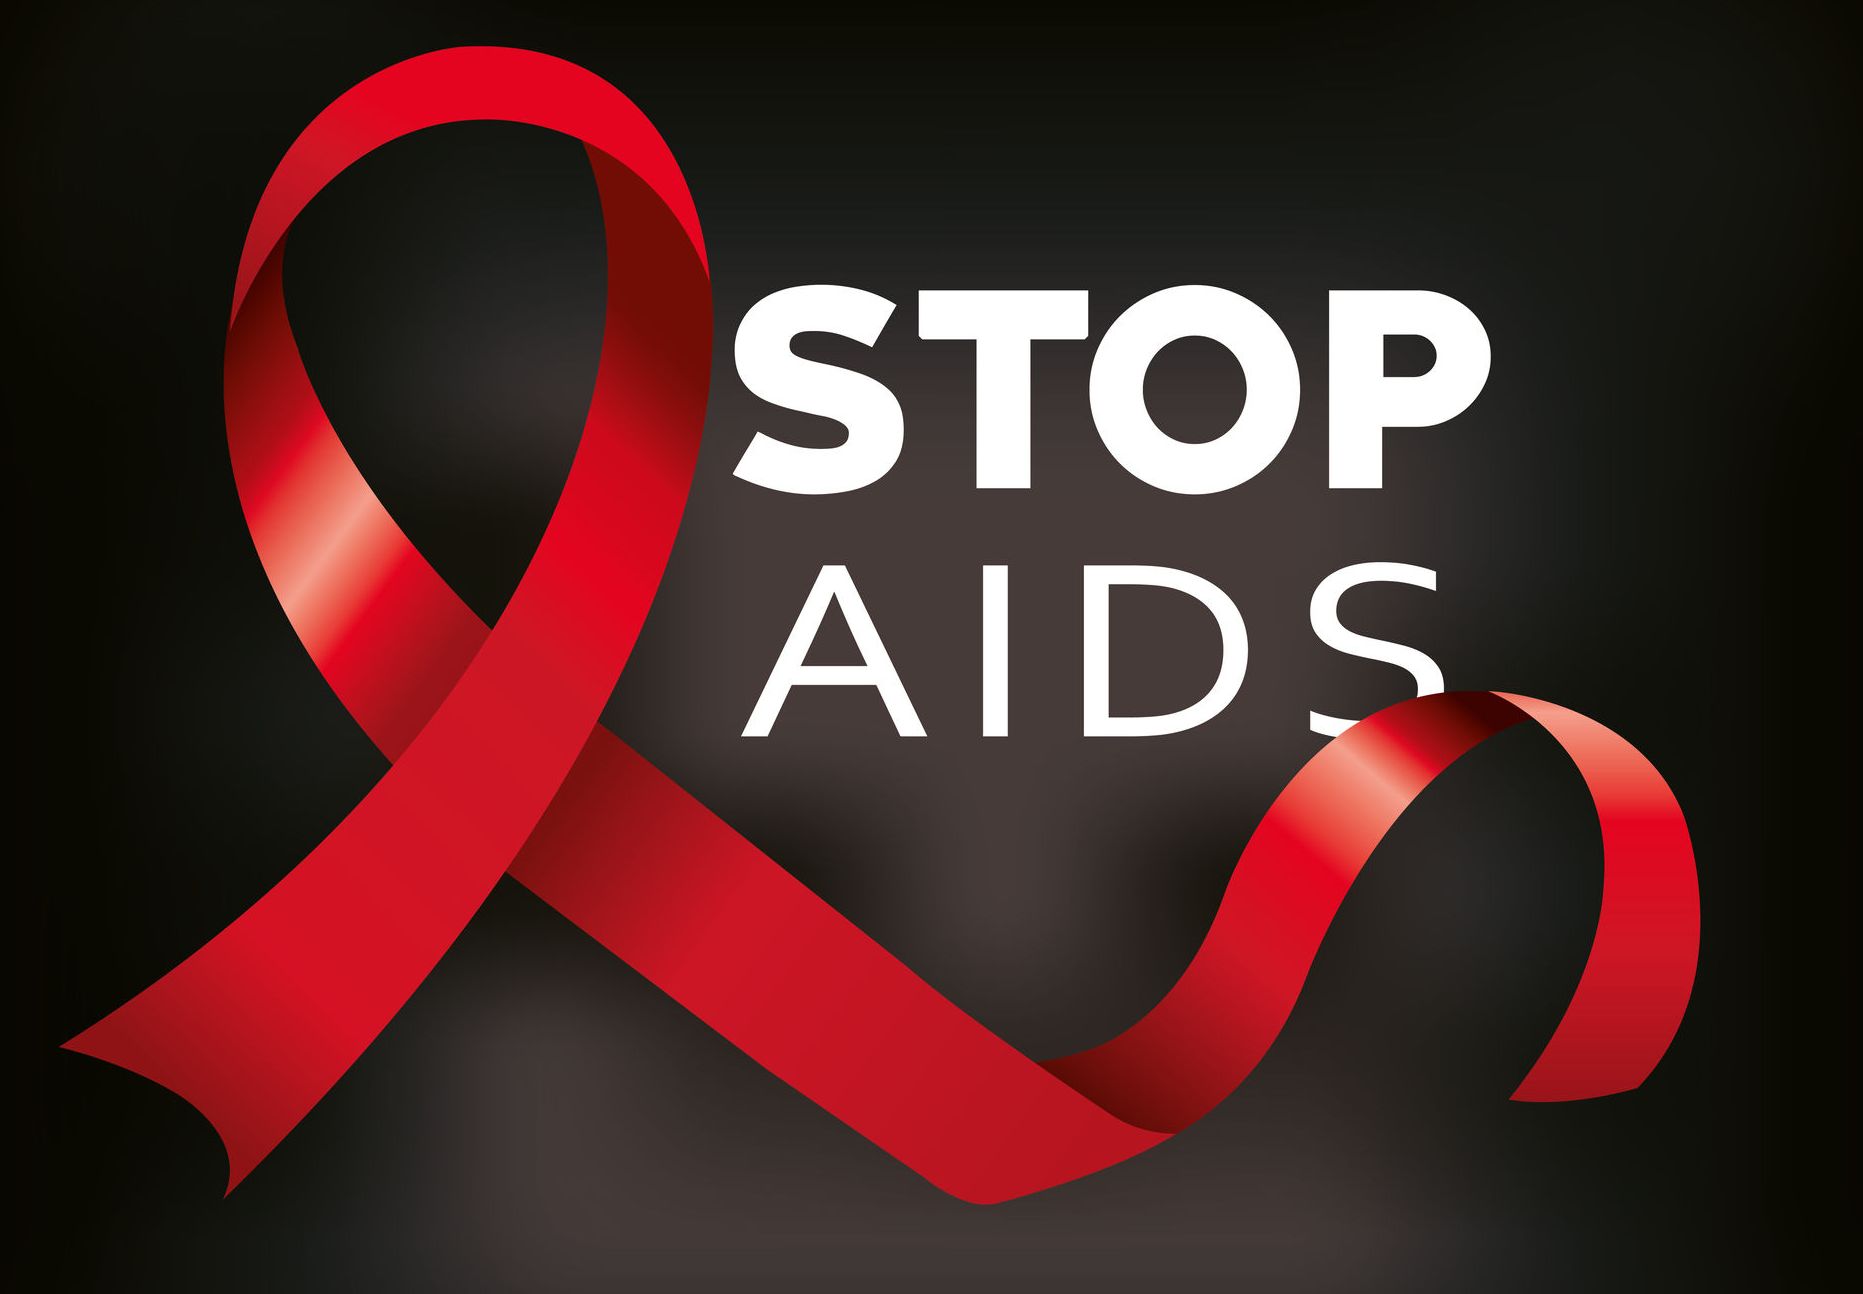 AIDS tünetei és kezelése - HáziPatika